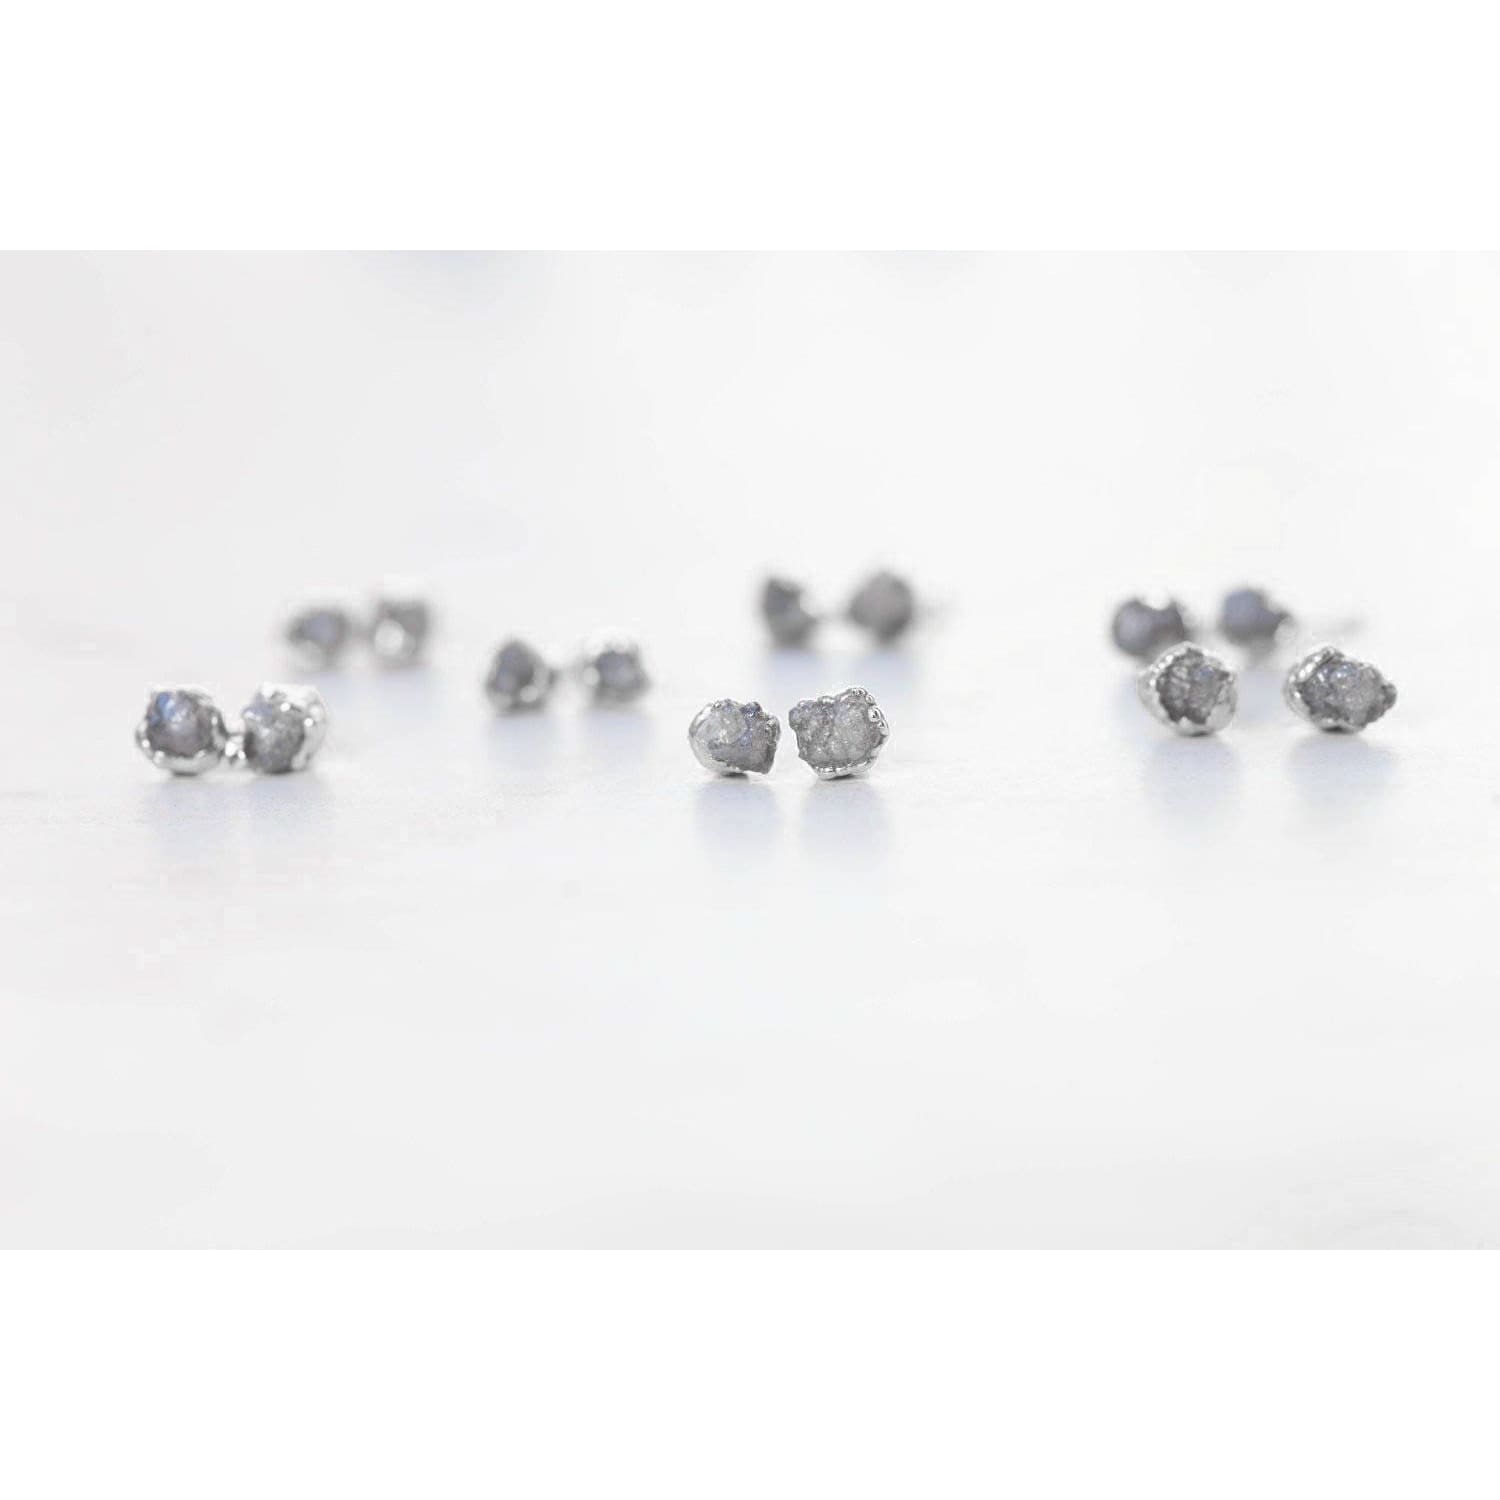 Dainty Raw Diamond Stud Earrings in Sterling Silver Gemstone